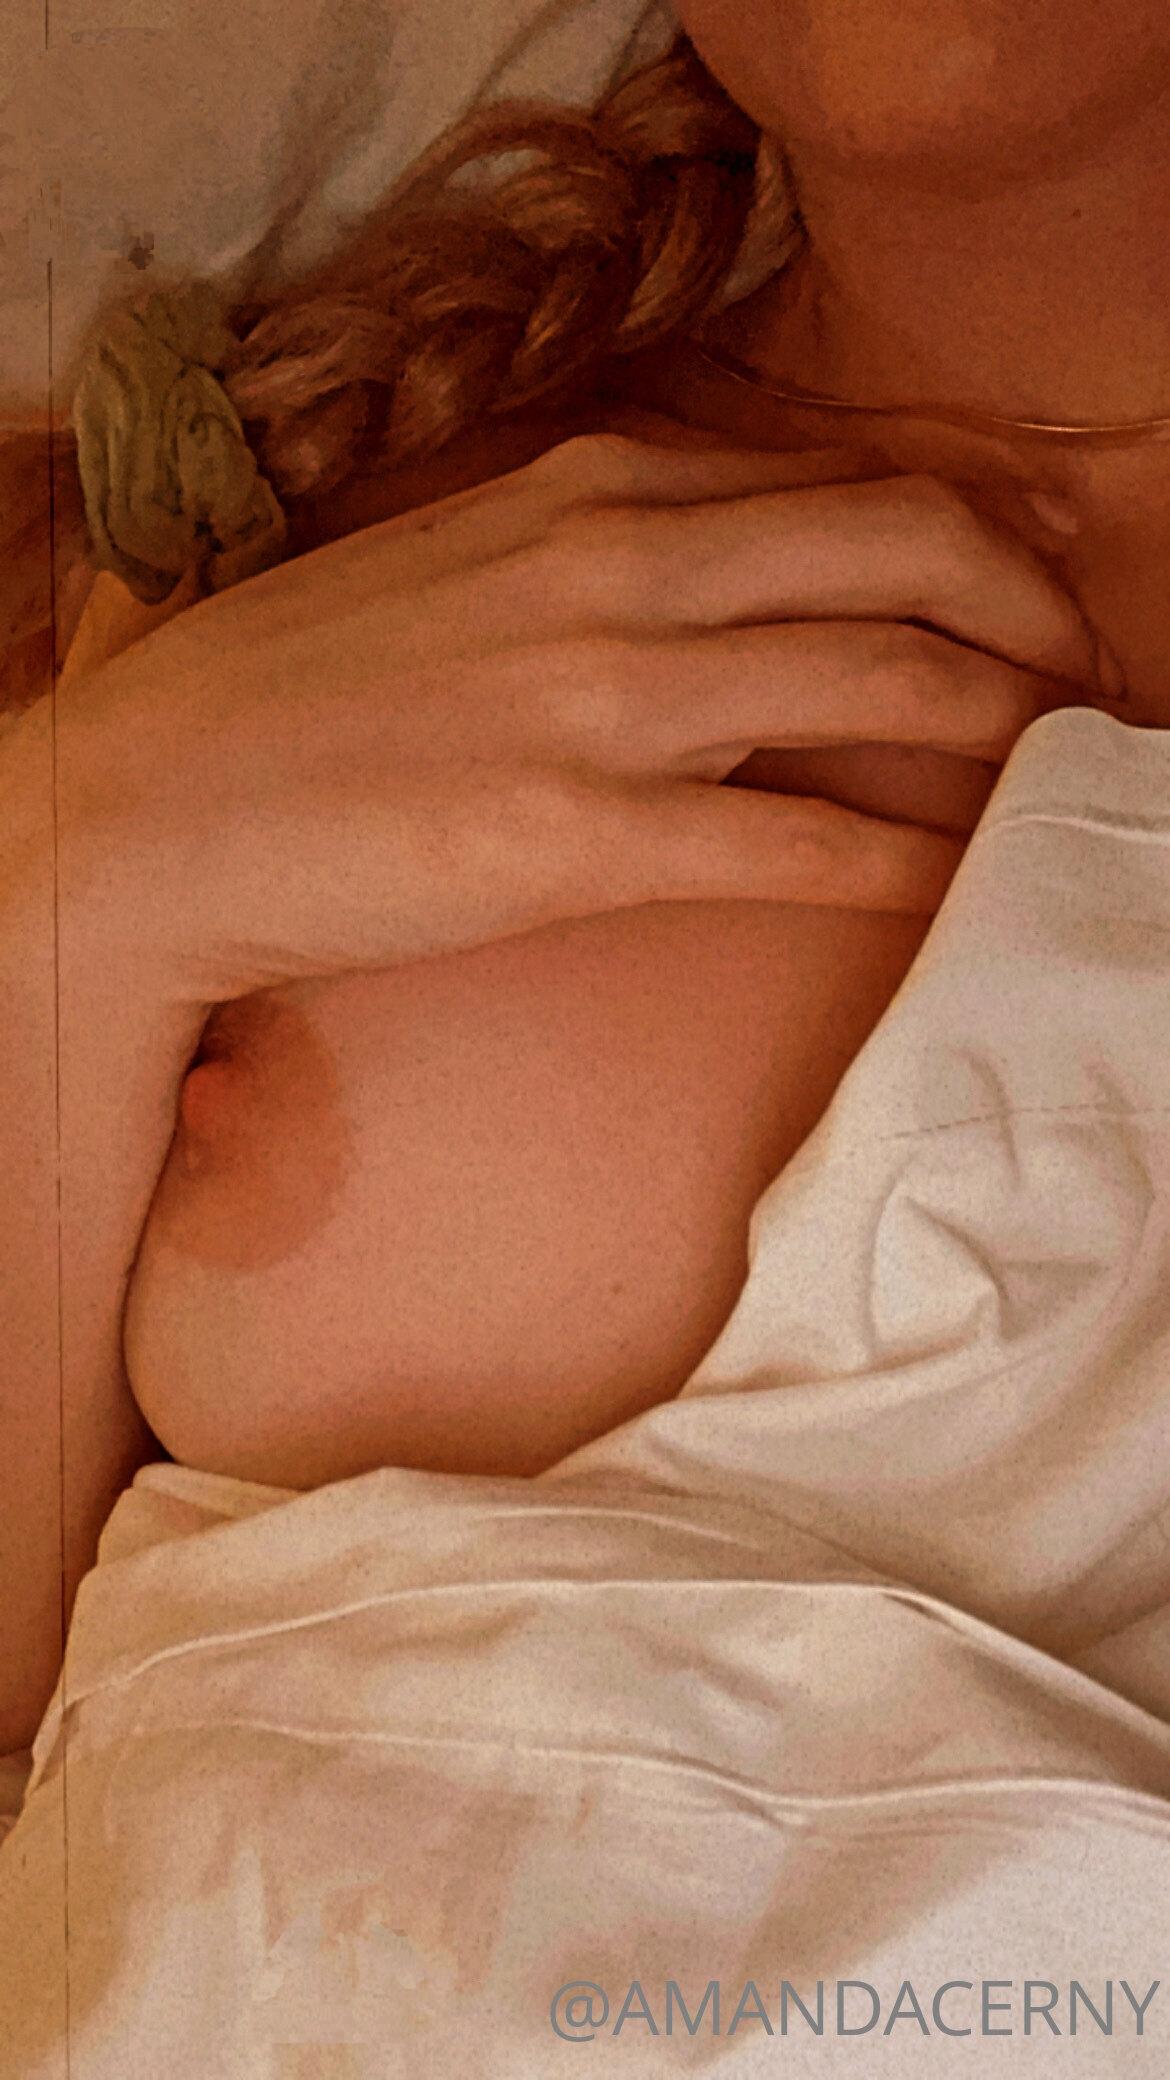 Amanda Cerny Nude Nip Slip Onlyfans Set Leaked Thotflix